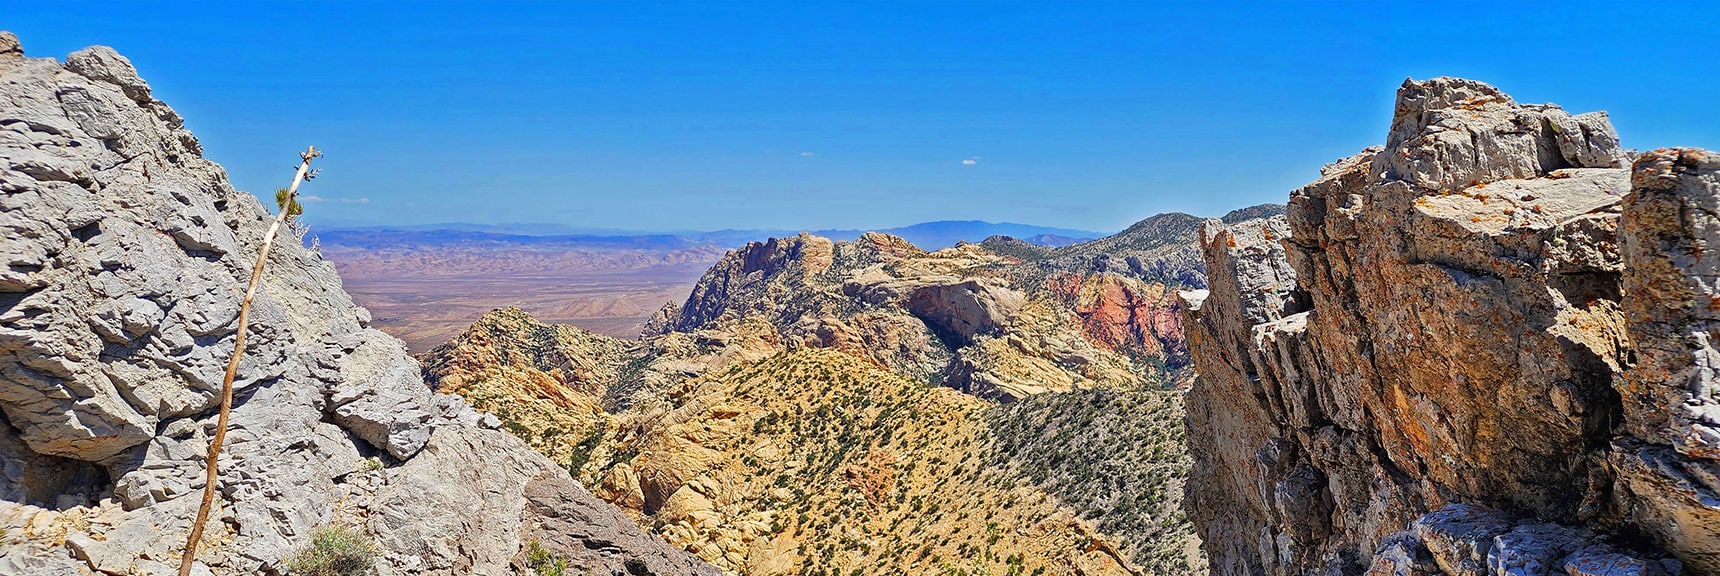 Hidden Peak and Monument Peak Framed by Ridgeline Pillars | Mt Wilson to Hidden Peak | Upper Crest Ridgeline | Rainbow Mountain Wilderness, Nevada